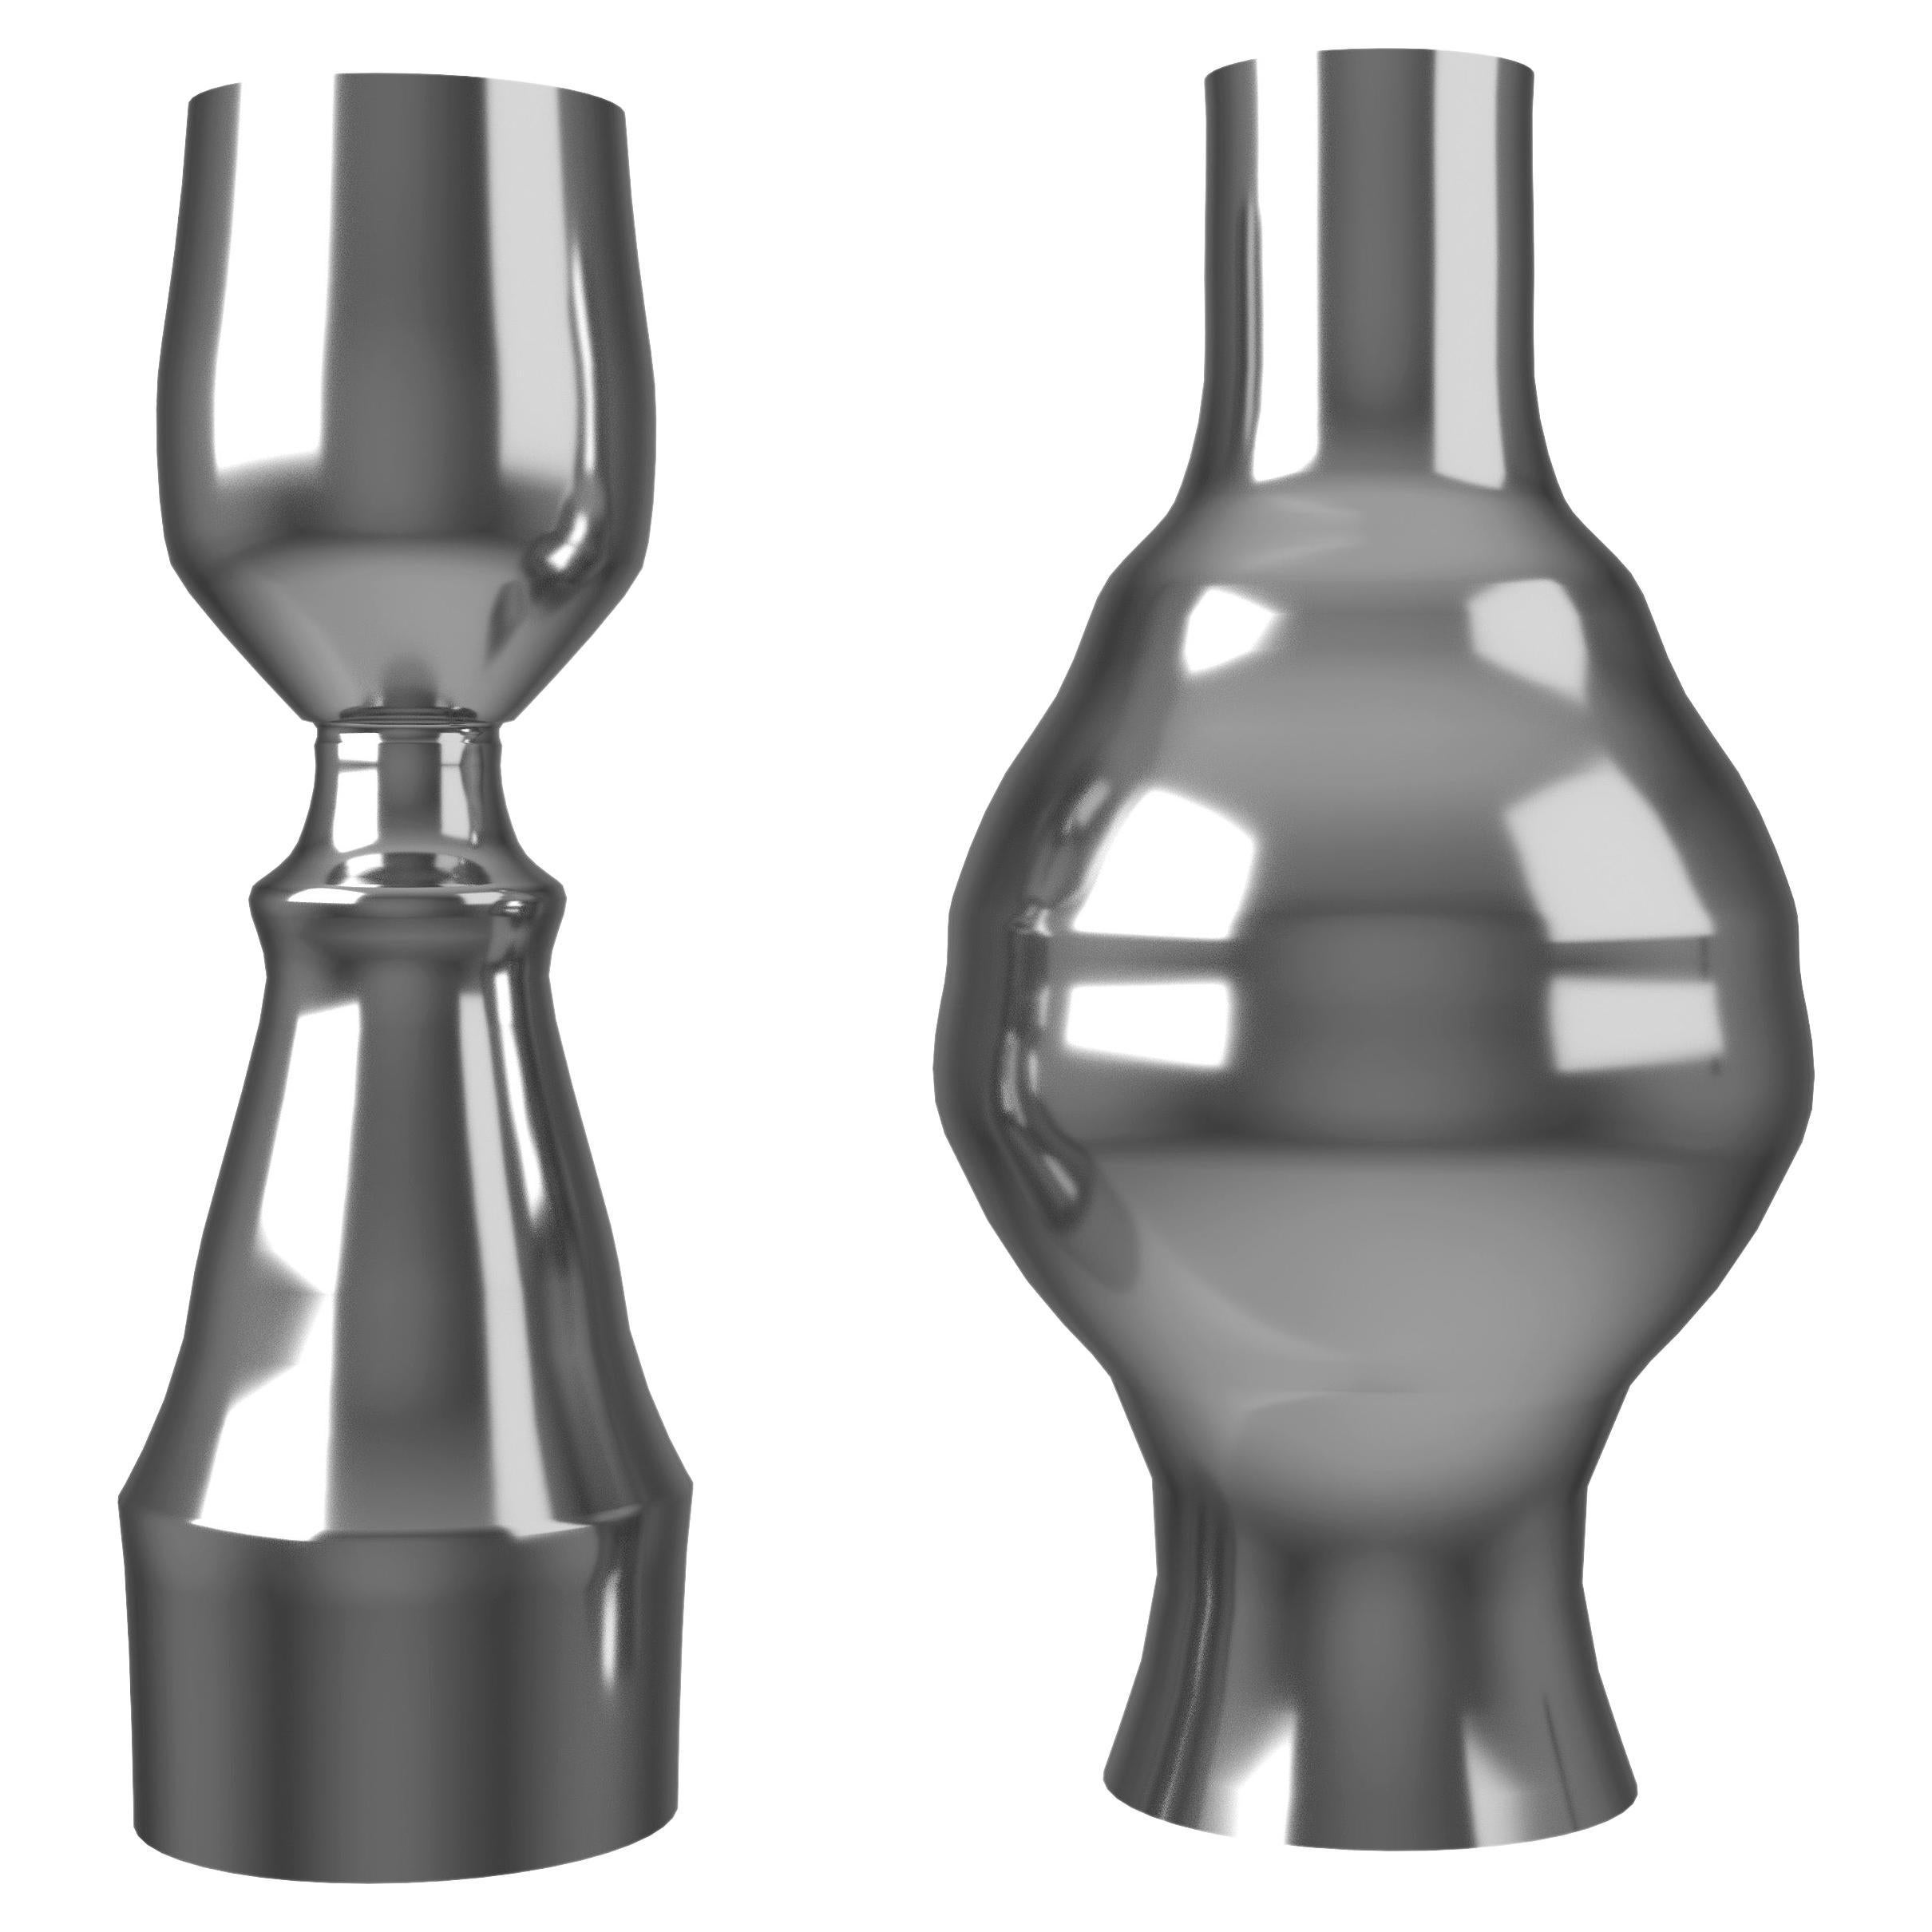  Paire de vases Inamorata en aluminium poli